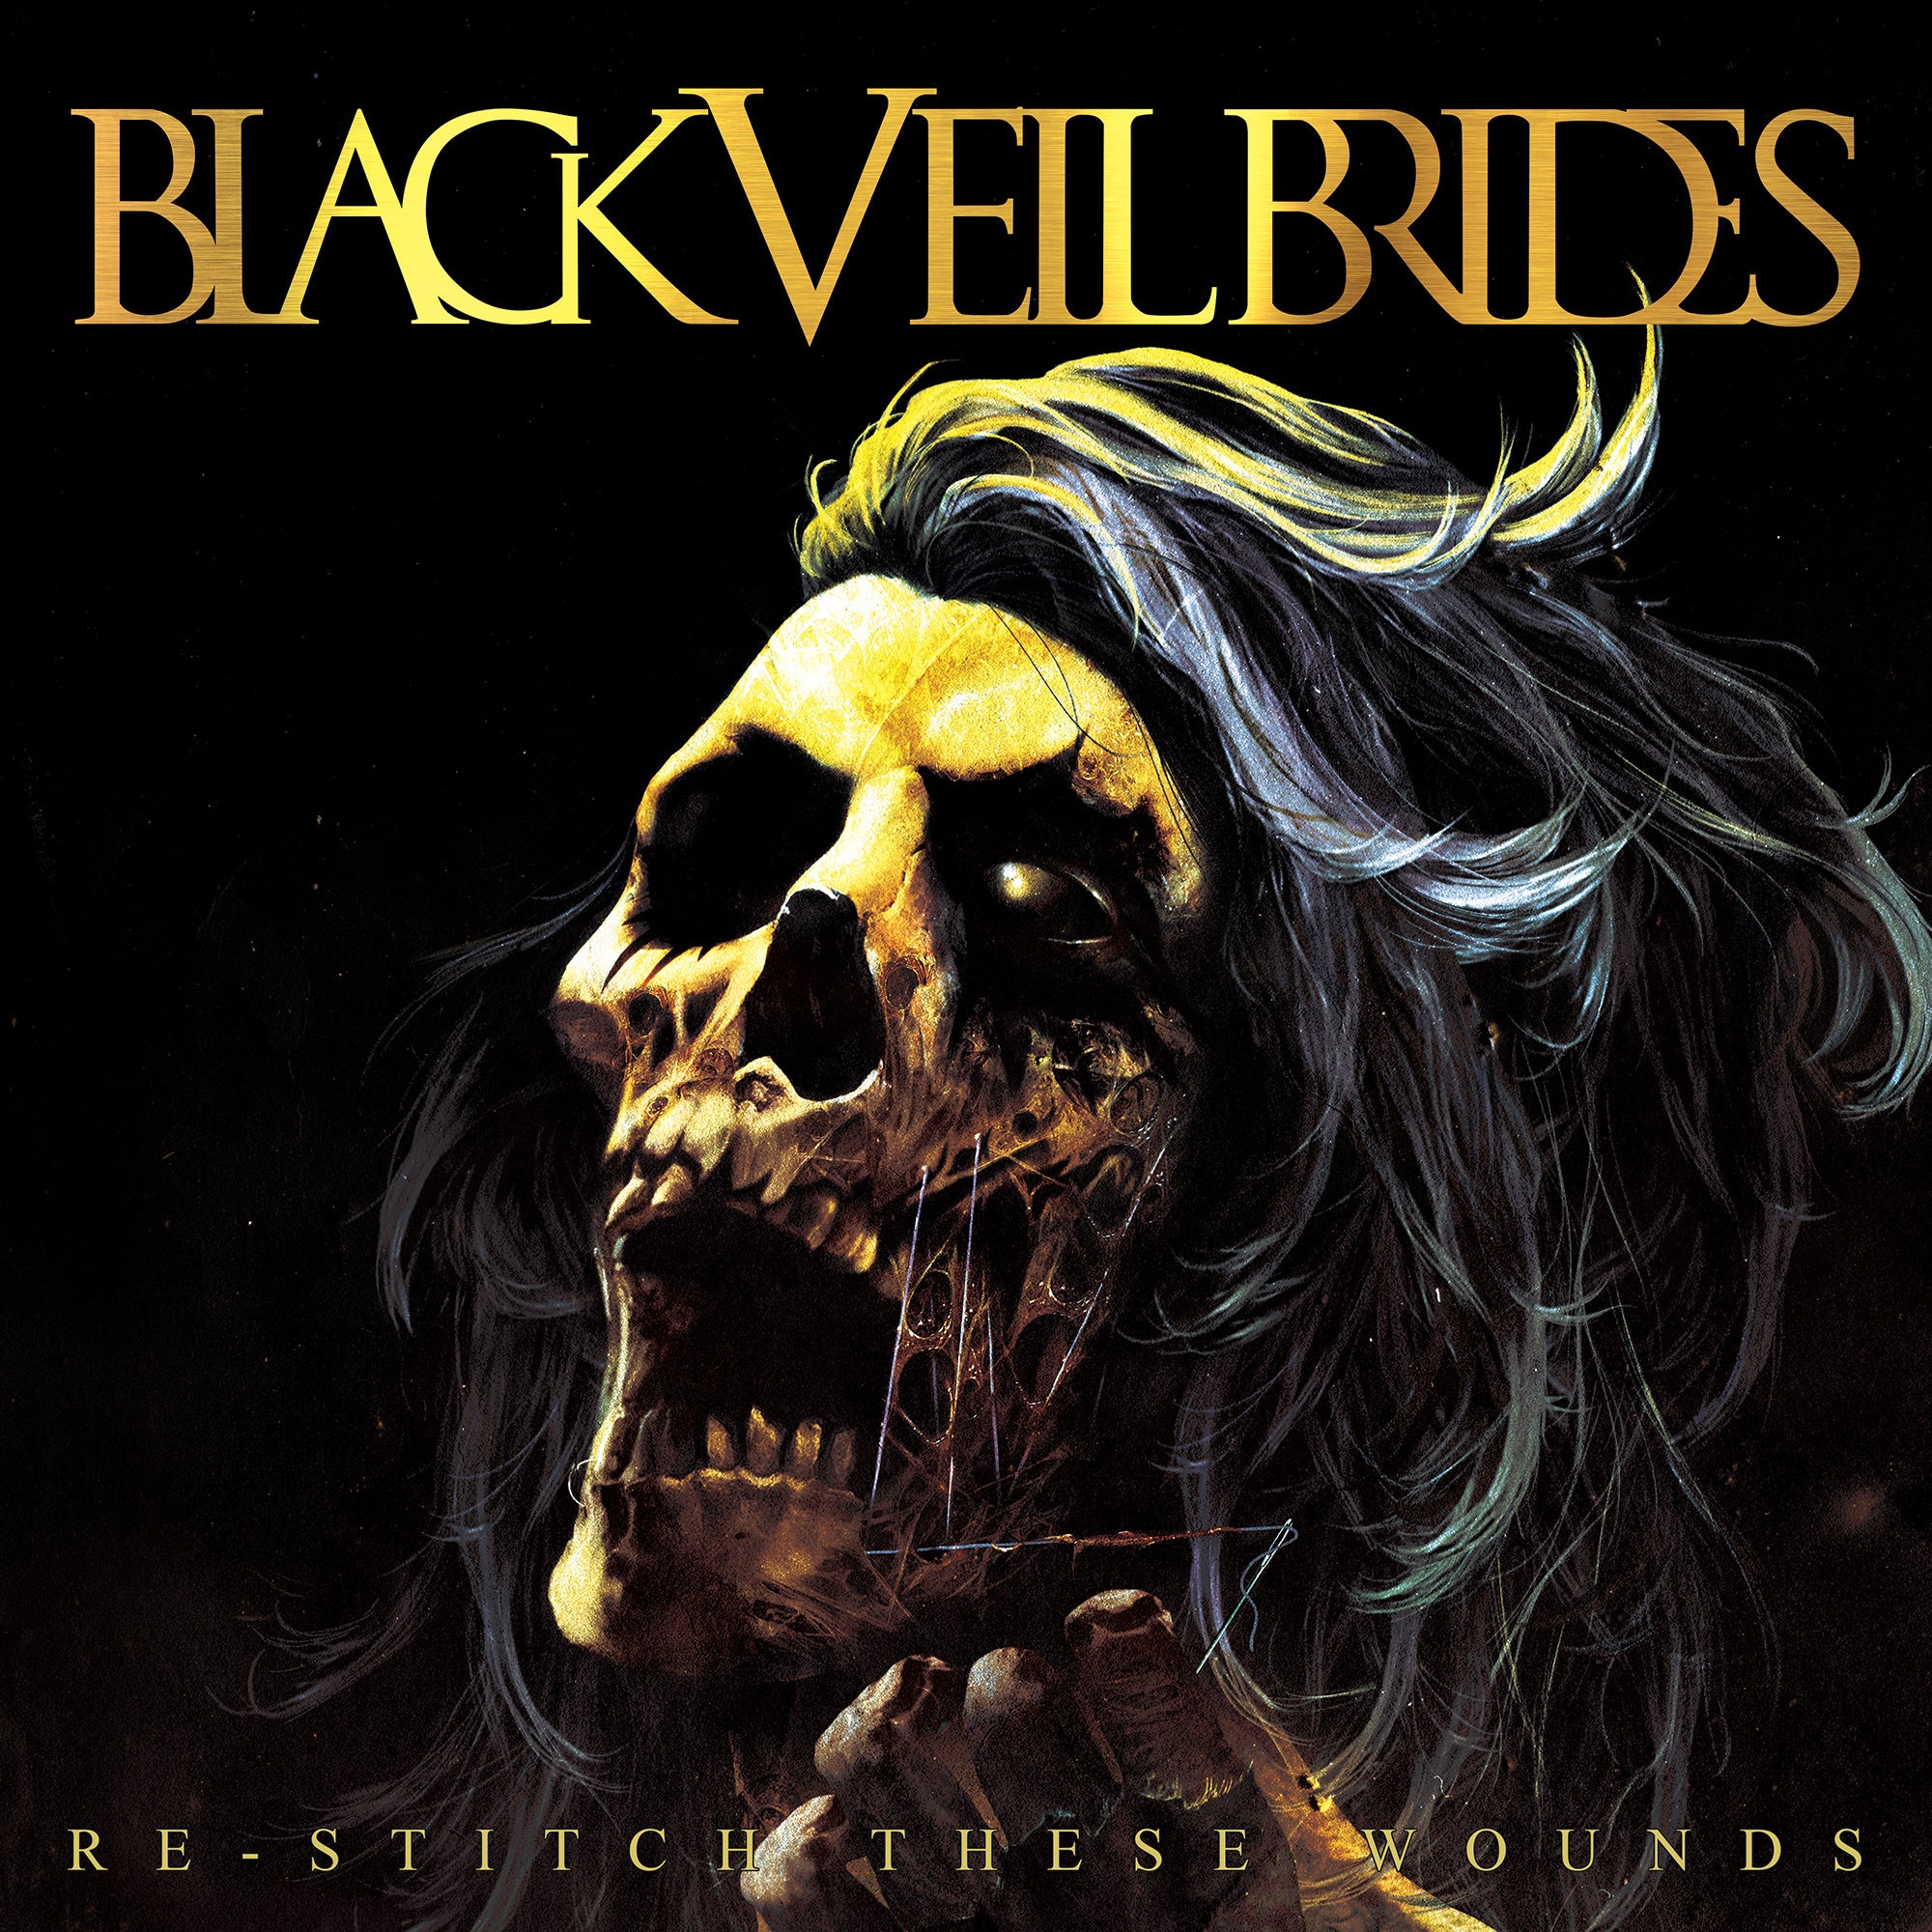 Black Veil Brides – Re-Stitch These Wounds (2010/2020) [FLAC 24bit/48kHz]